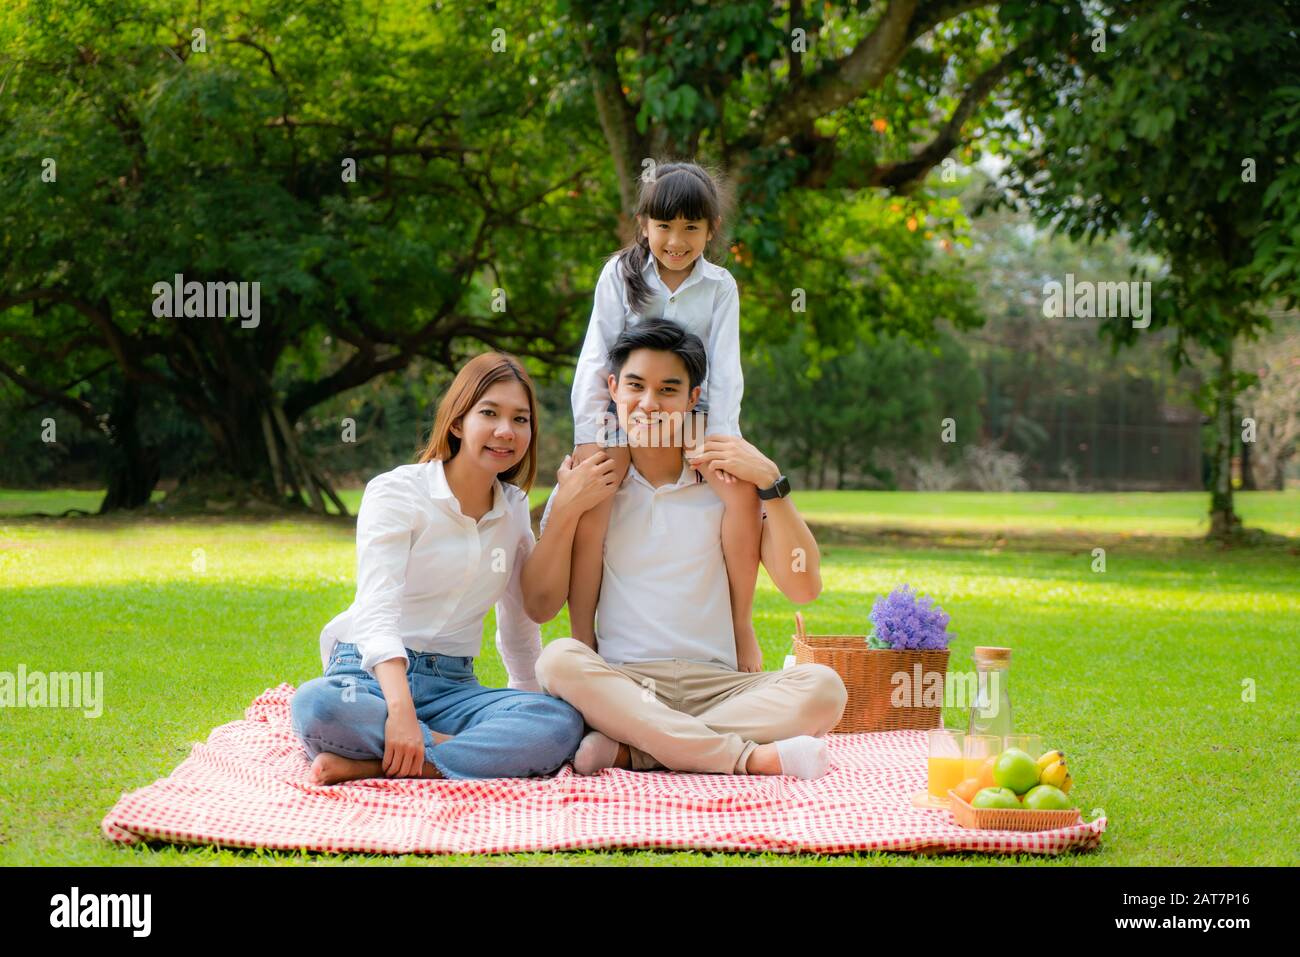 Asiatische Teenager Familie fröhlicher Urlaub Picknick-Moment im Park mit Vater, Mutter und Tochter Blick auf Kamera und Lächeln für einen glücklichen Urlaub zu verbringen Stockfoto